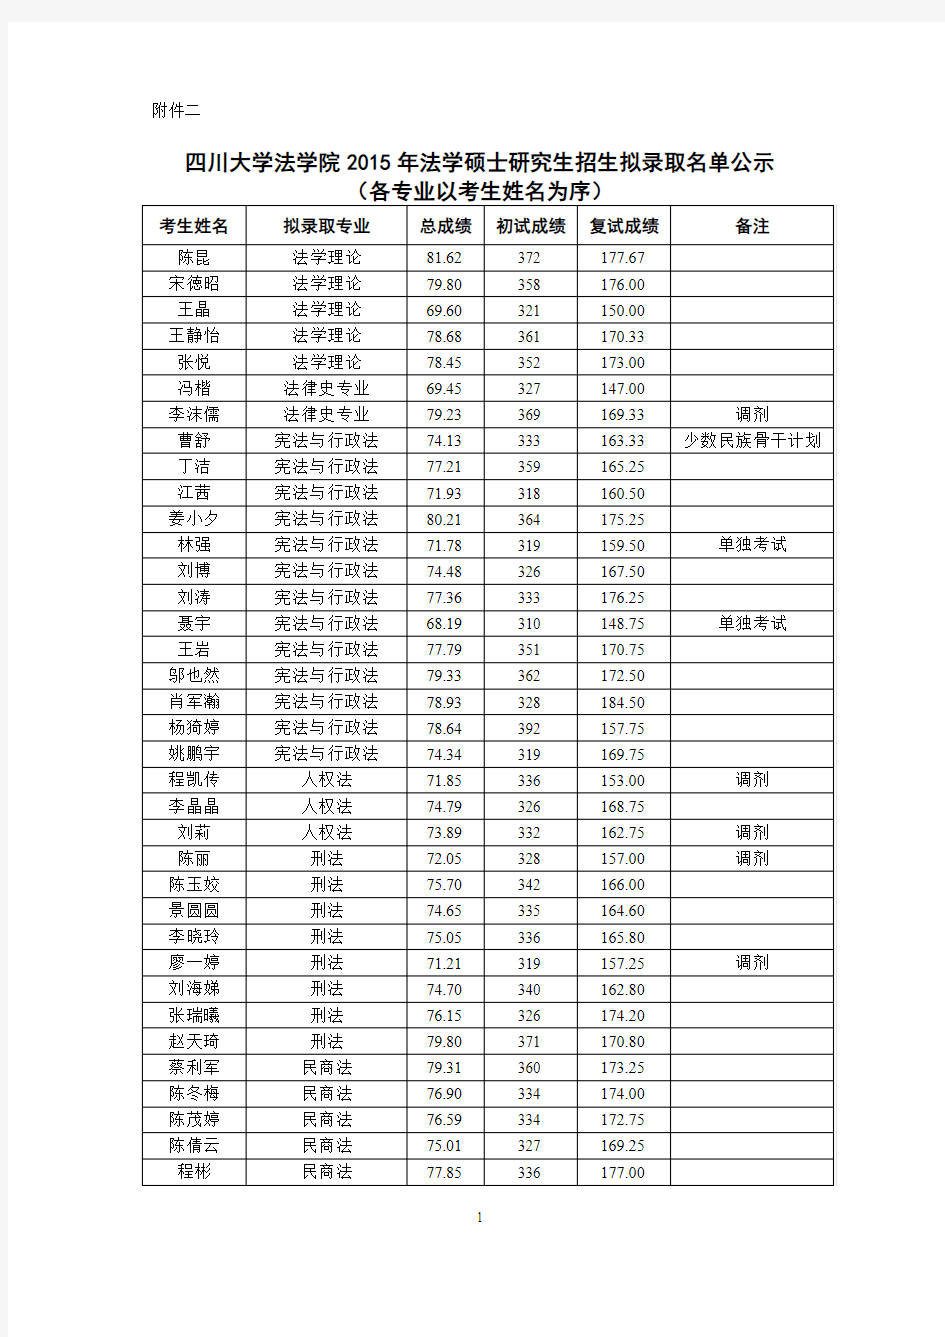 四川大学法学院2015年硕士拟录取名单公示